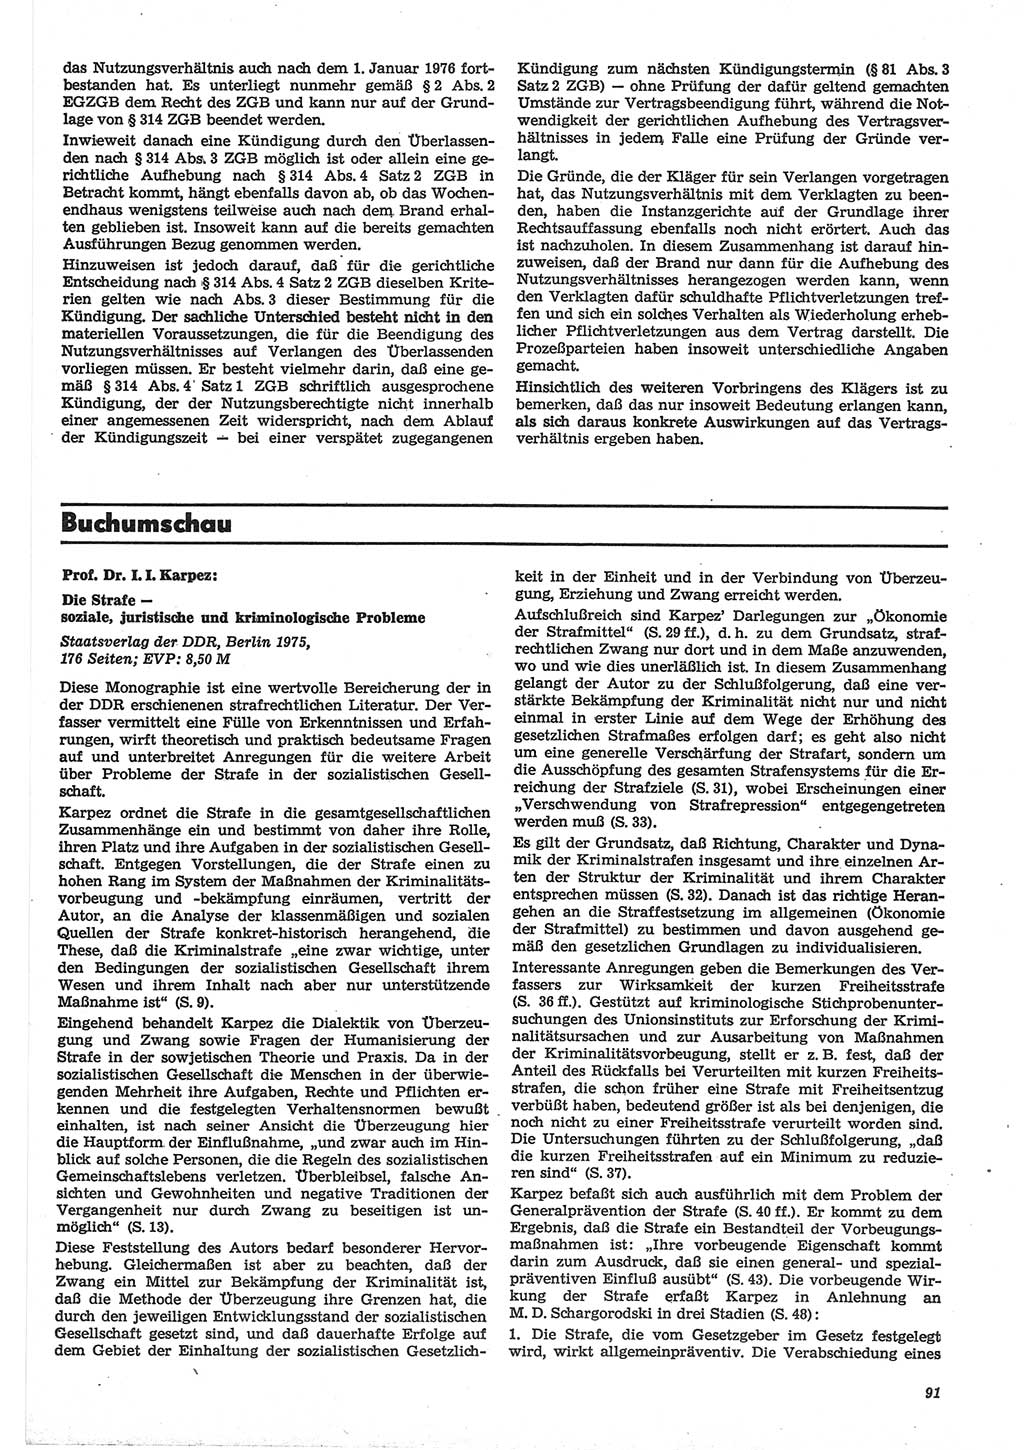 Neue Justiz (NJ), Zeitschrift für Recht und Rechtswissenschaft-Zeitschrift, sozialistisches Recht und Gesetzlichkeit, 31. Jahrgang 1977, Seite 91 (NJ DDR 1977, S. 91)